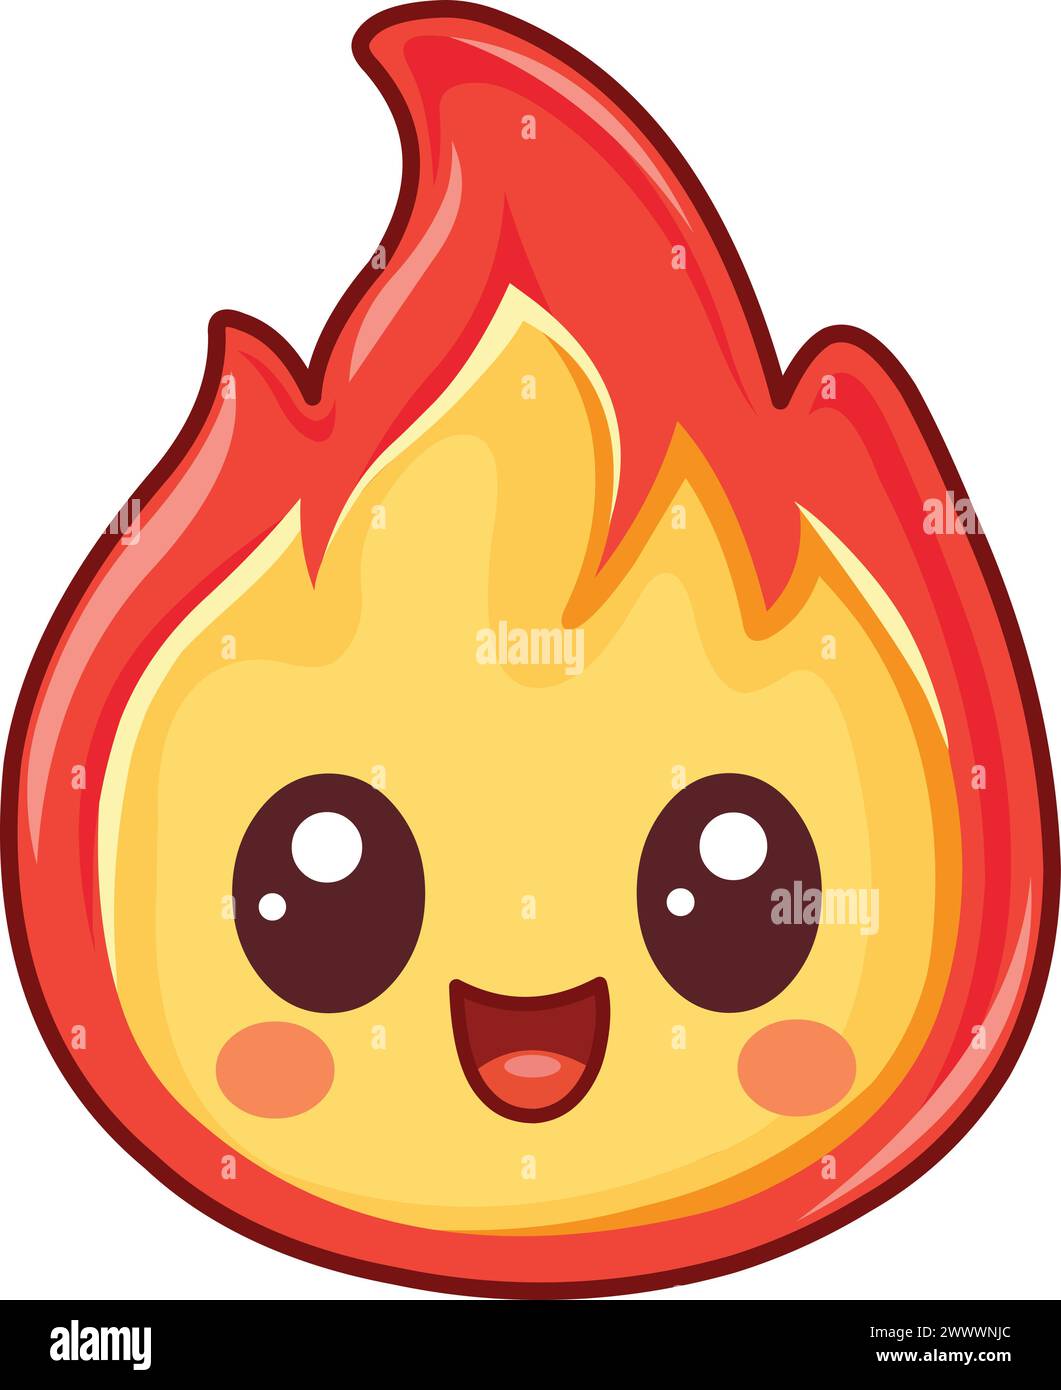 Personnage de flamme de feu heureux dans un style kawaii Illustration de Vecteur